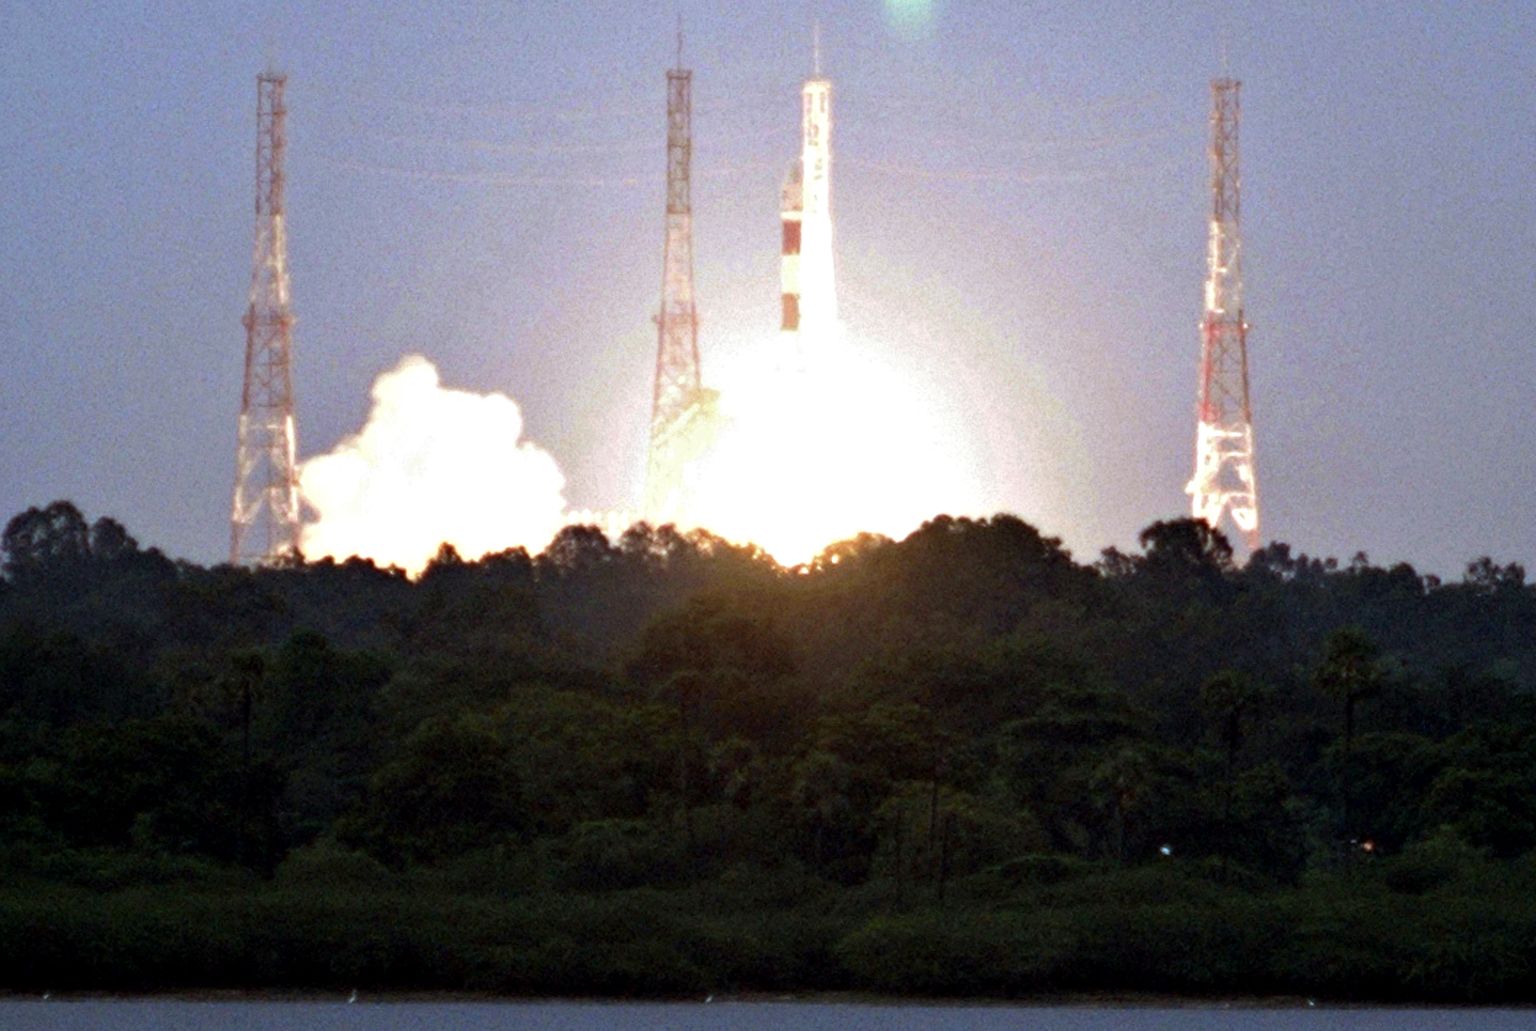 Uue missiooni eelkäija Chandrayaan-1 õhkutõus 2008. aastal. Pilt on illustreeriv.